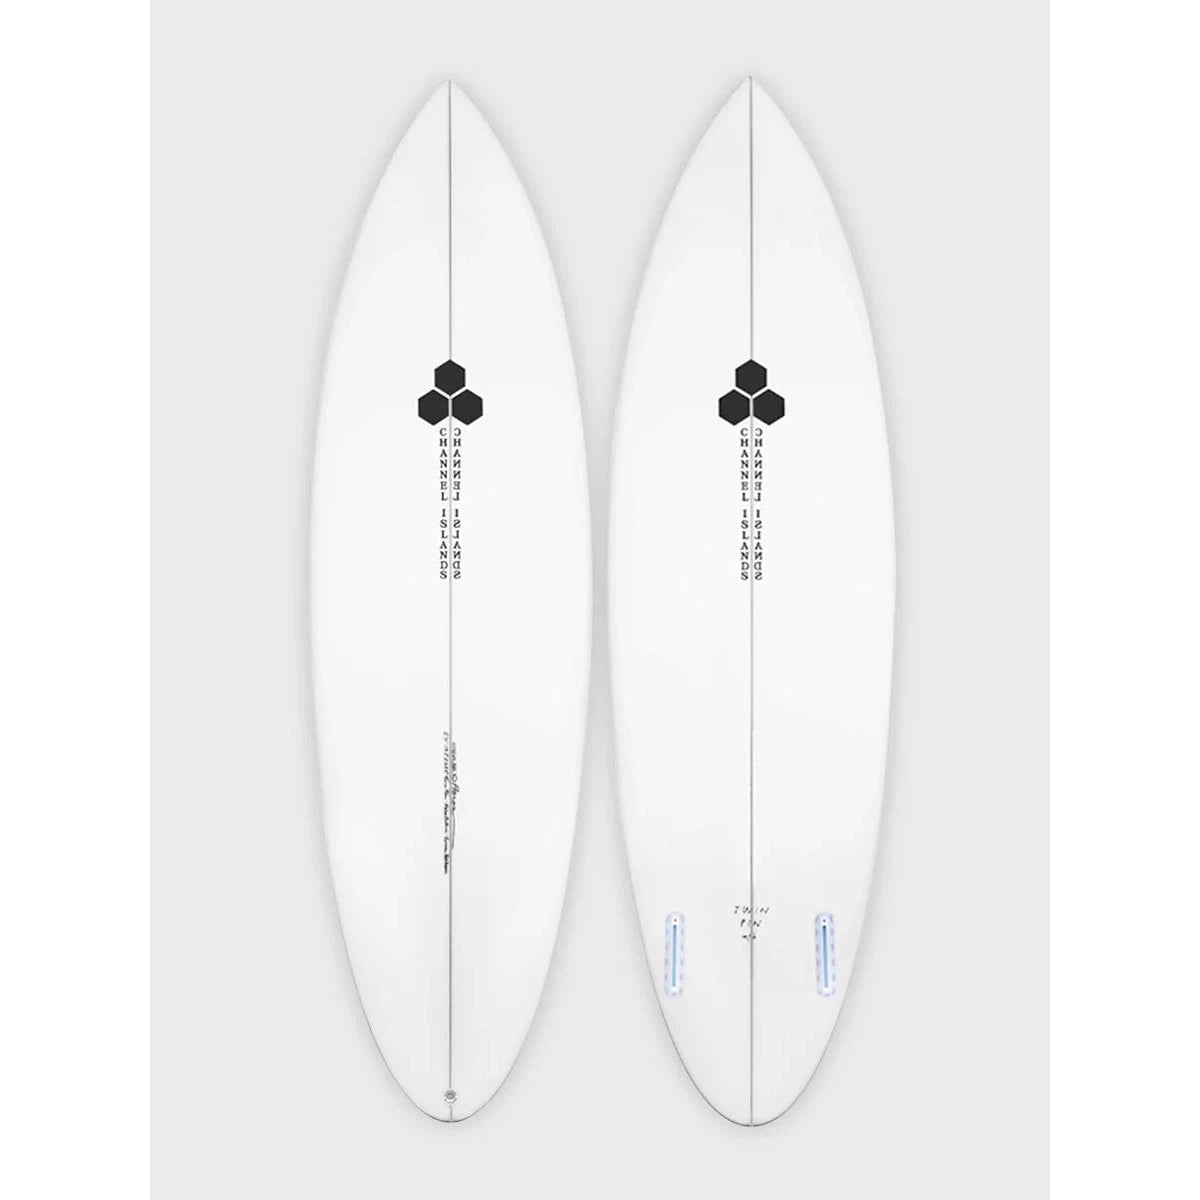 Channel Islands Twin Pin Surfboard